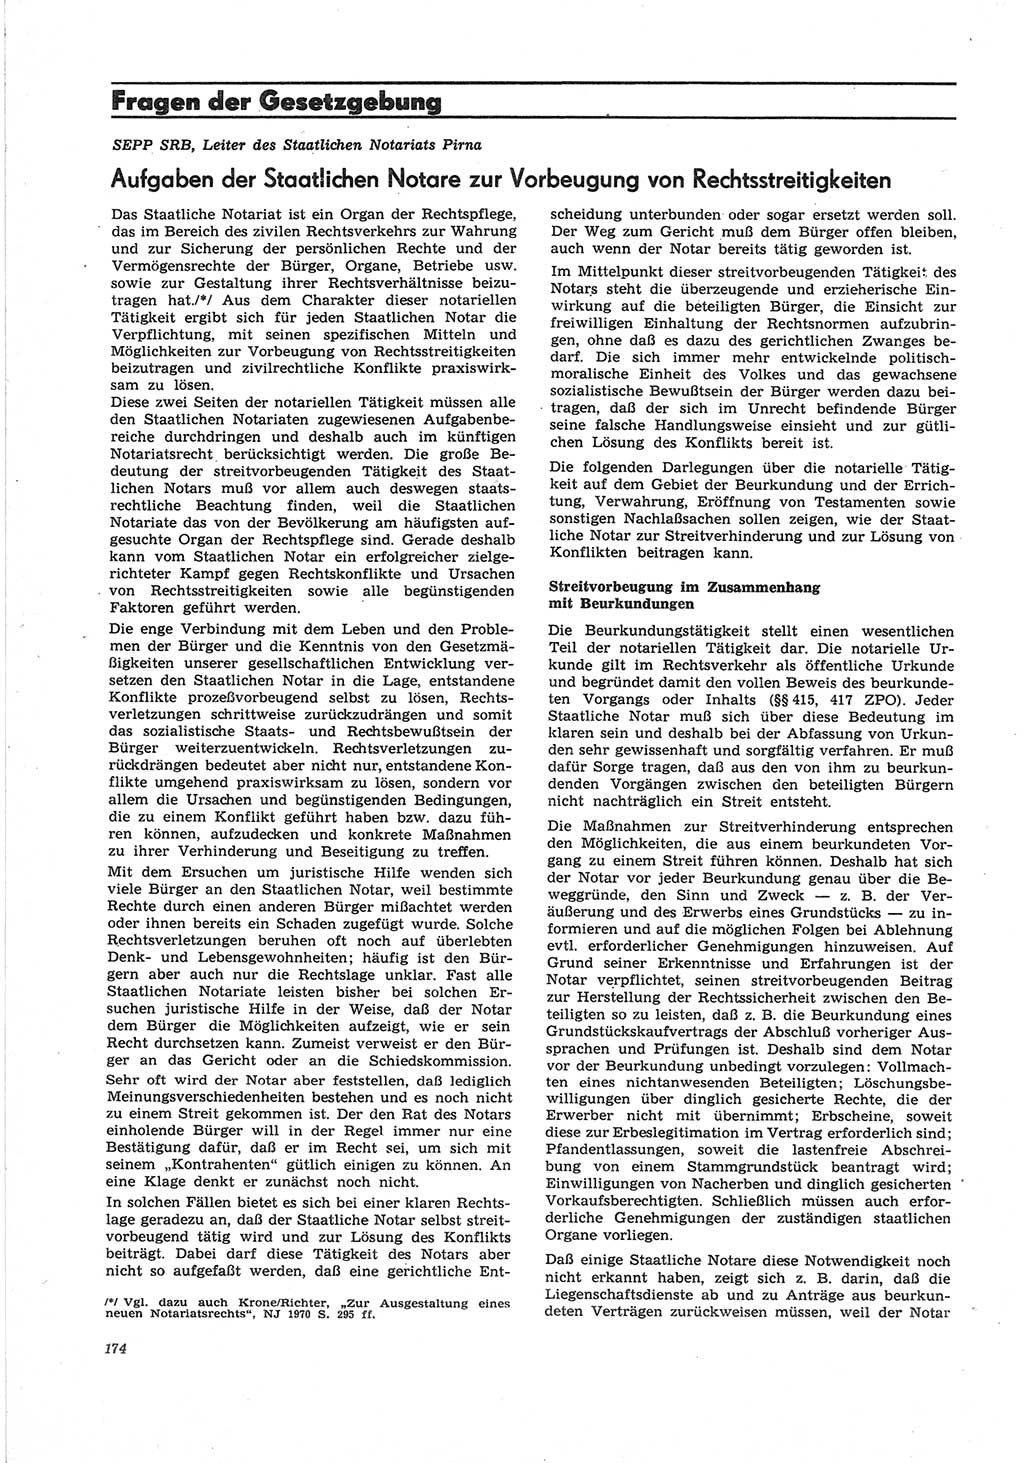 Neue Justiz (NJ), Zeitschrift für Recht und Rechtswissenschaft [Deutsche Demokratische Republik (DDR)], 25. Jahrgang 1971, Seite 174 (NJ DDR 1971, S. 174)